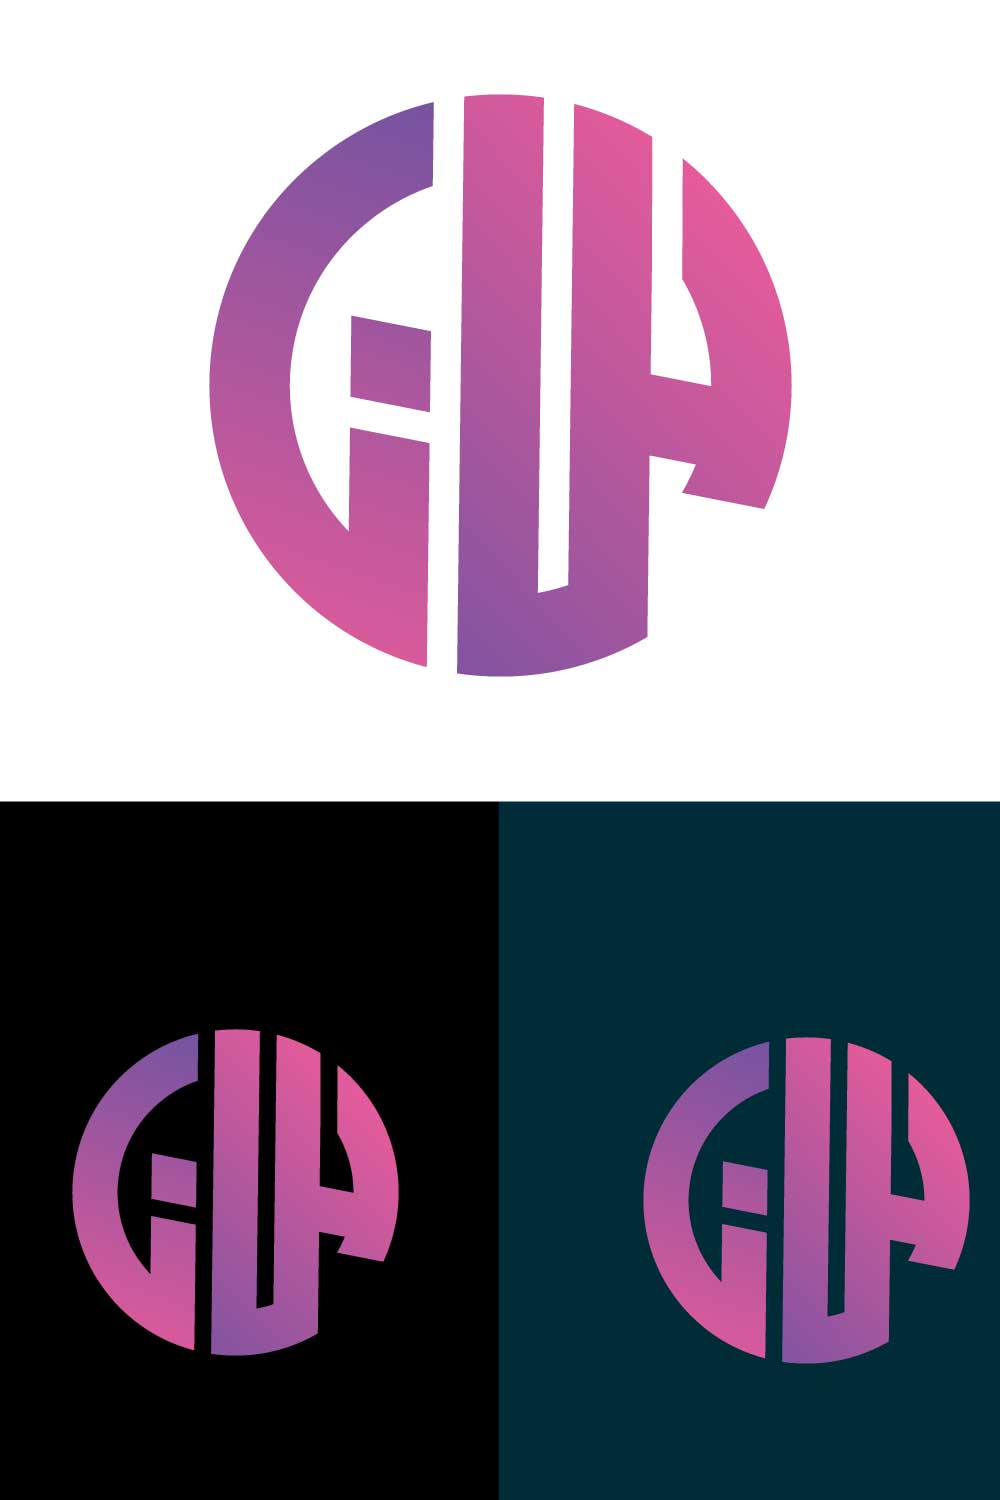 GHA letter momogram logo SVG/EPS/PNG pinterest preview image.